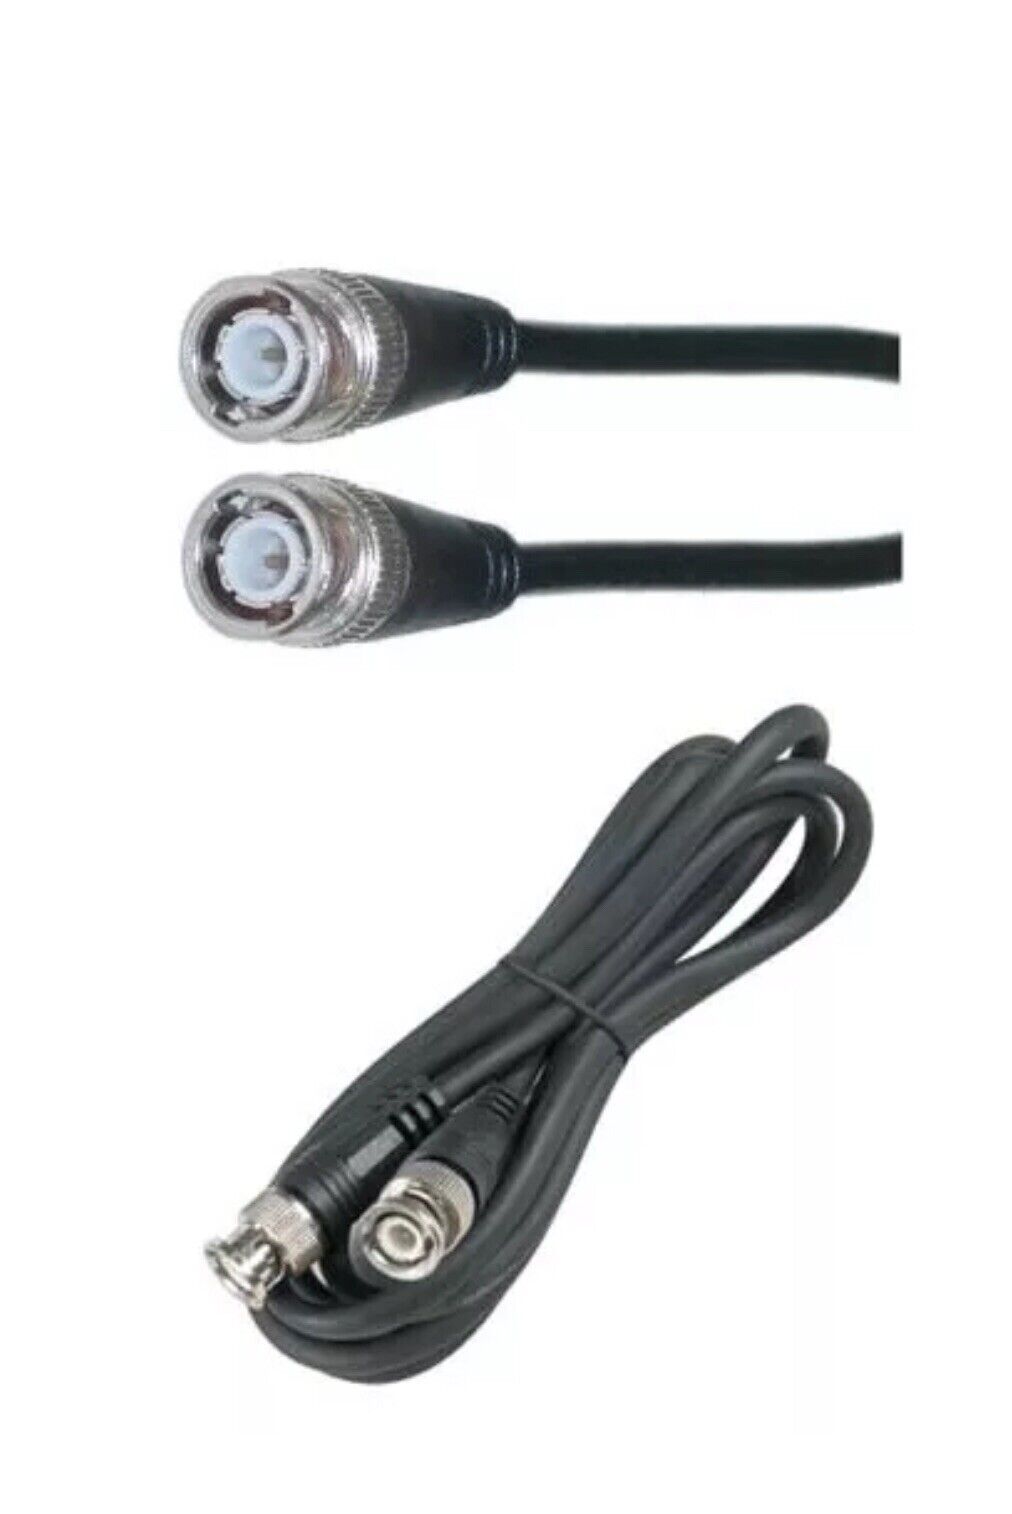 3ft short BNC RG59 Security/DSR/DVR Video Camera Coax/Coaxial Cable/Cord 10 Pcs